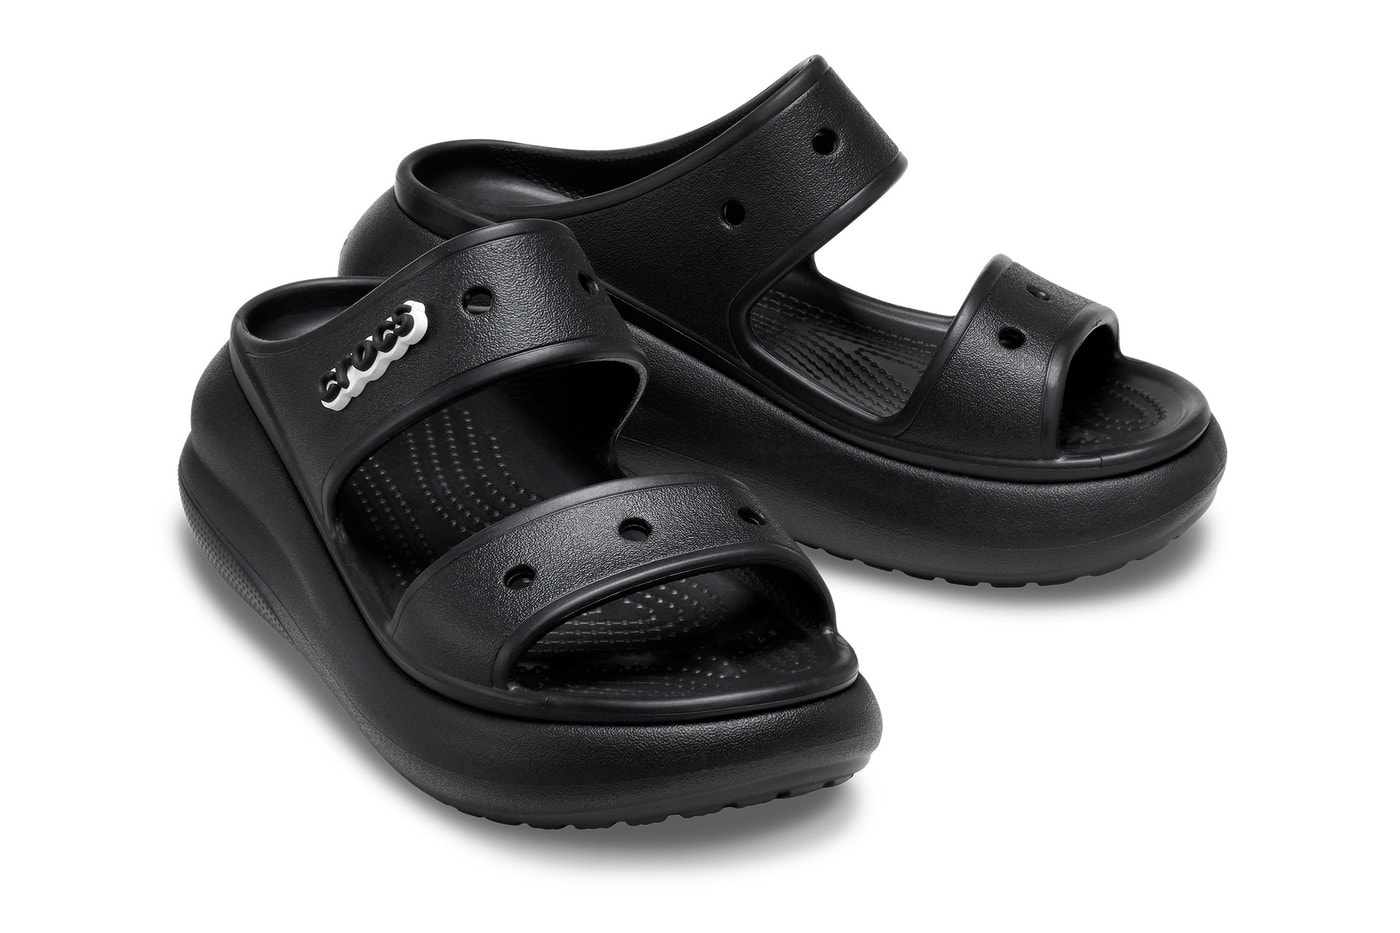 Crocs 正式推出最新厚底涼鞋「Crush」